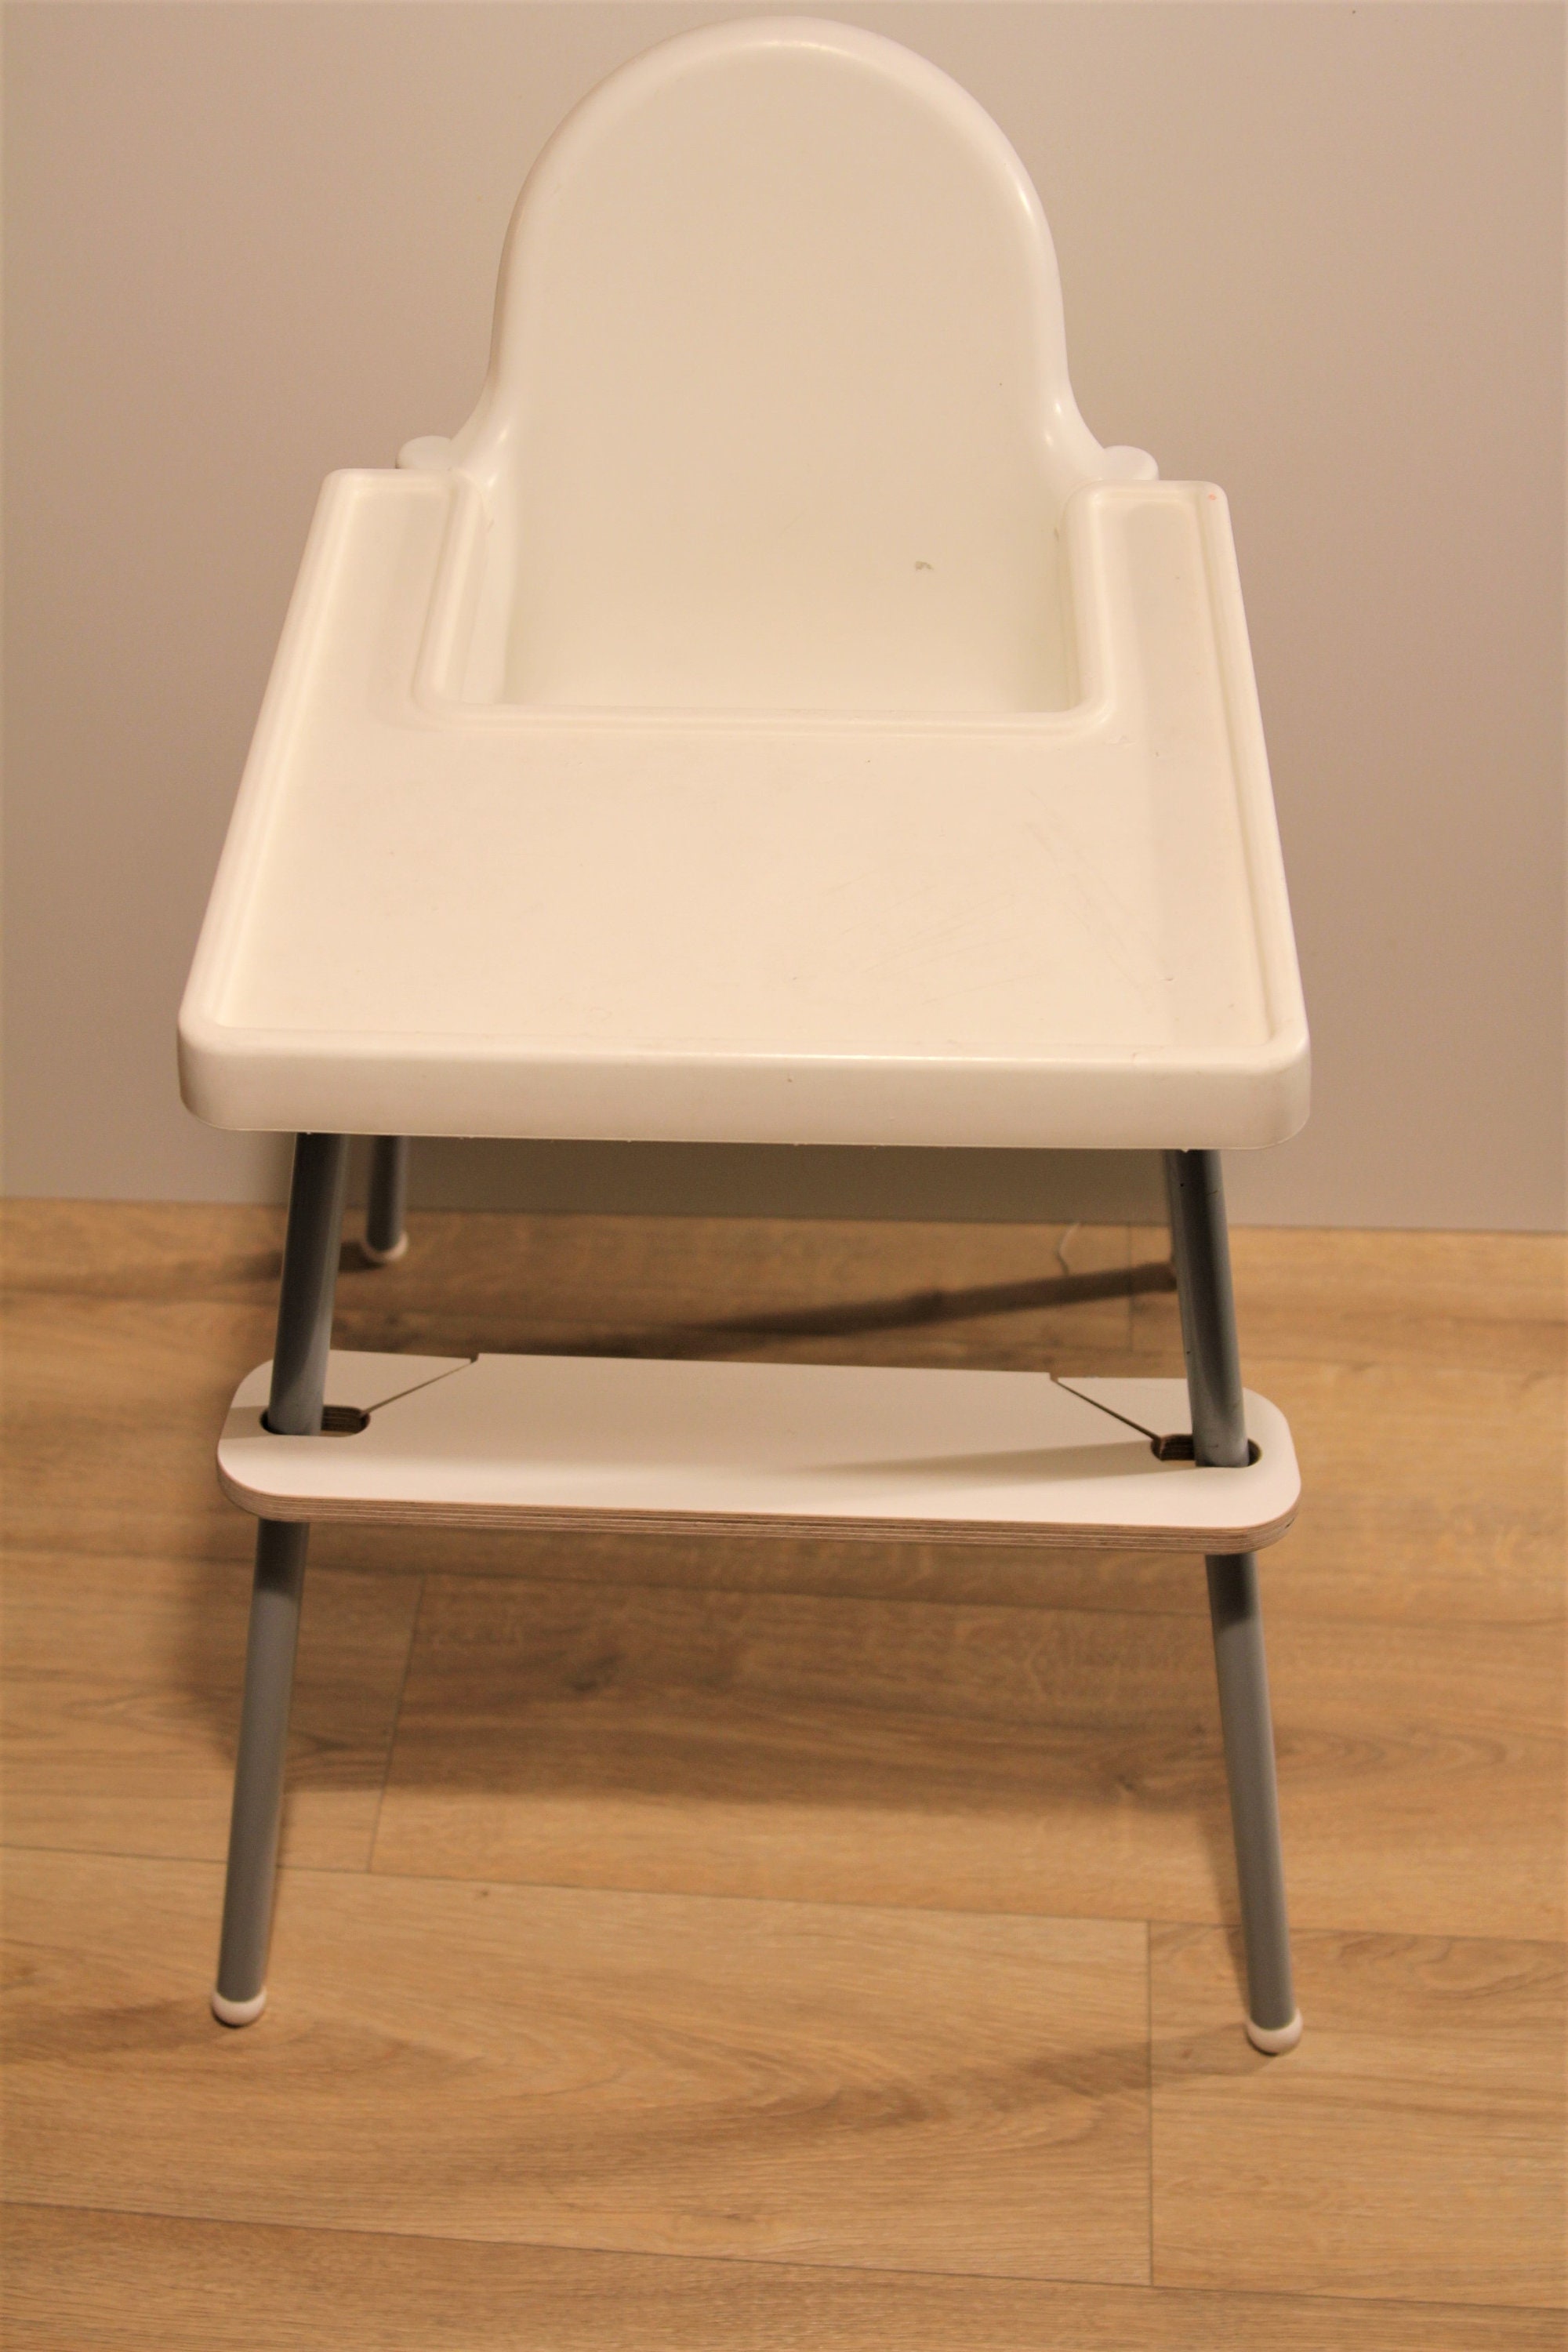 RECKNEY Repose-pieds pour chaise haute Ikea Antilop pour bébé - Réglable :  : Bébé et Puériculture